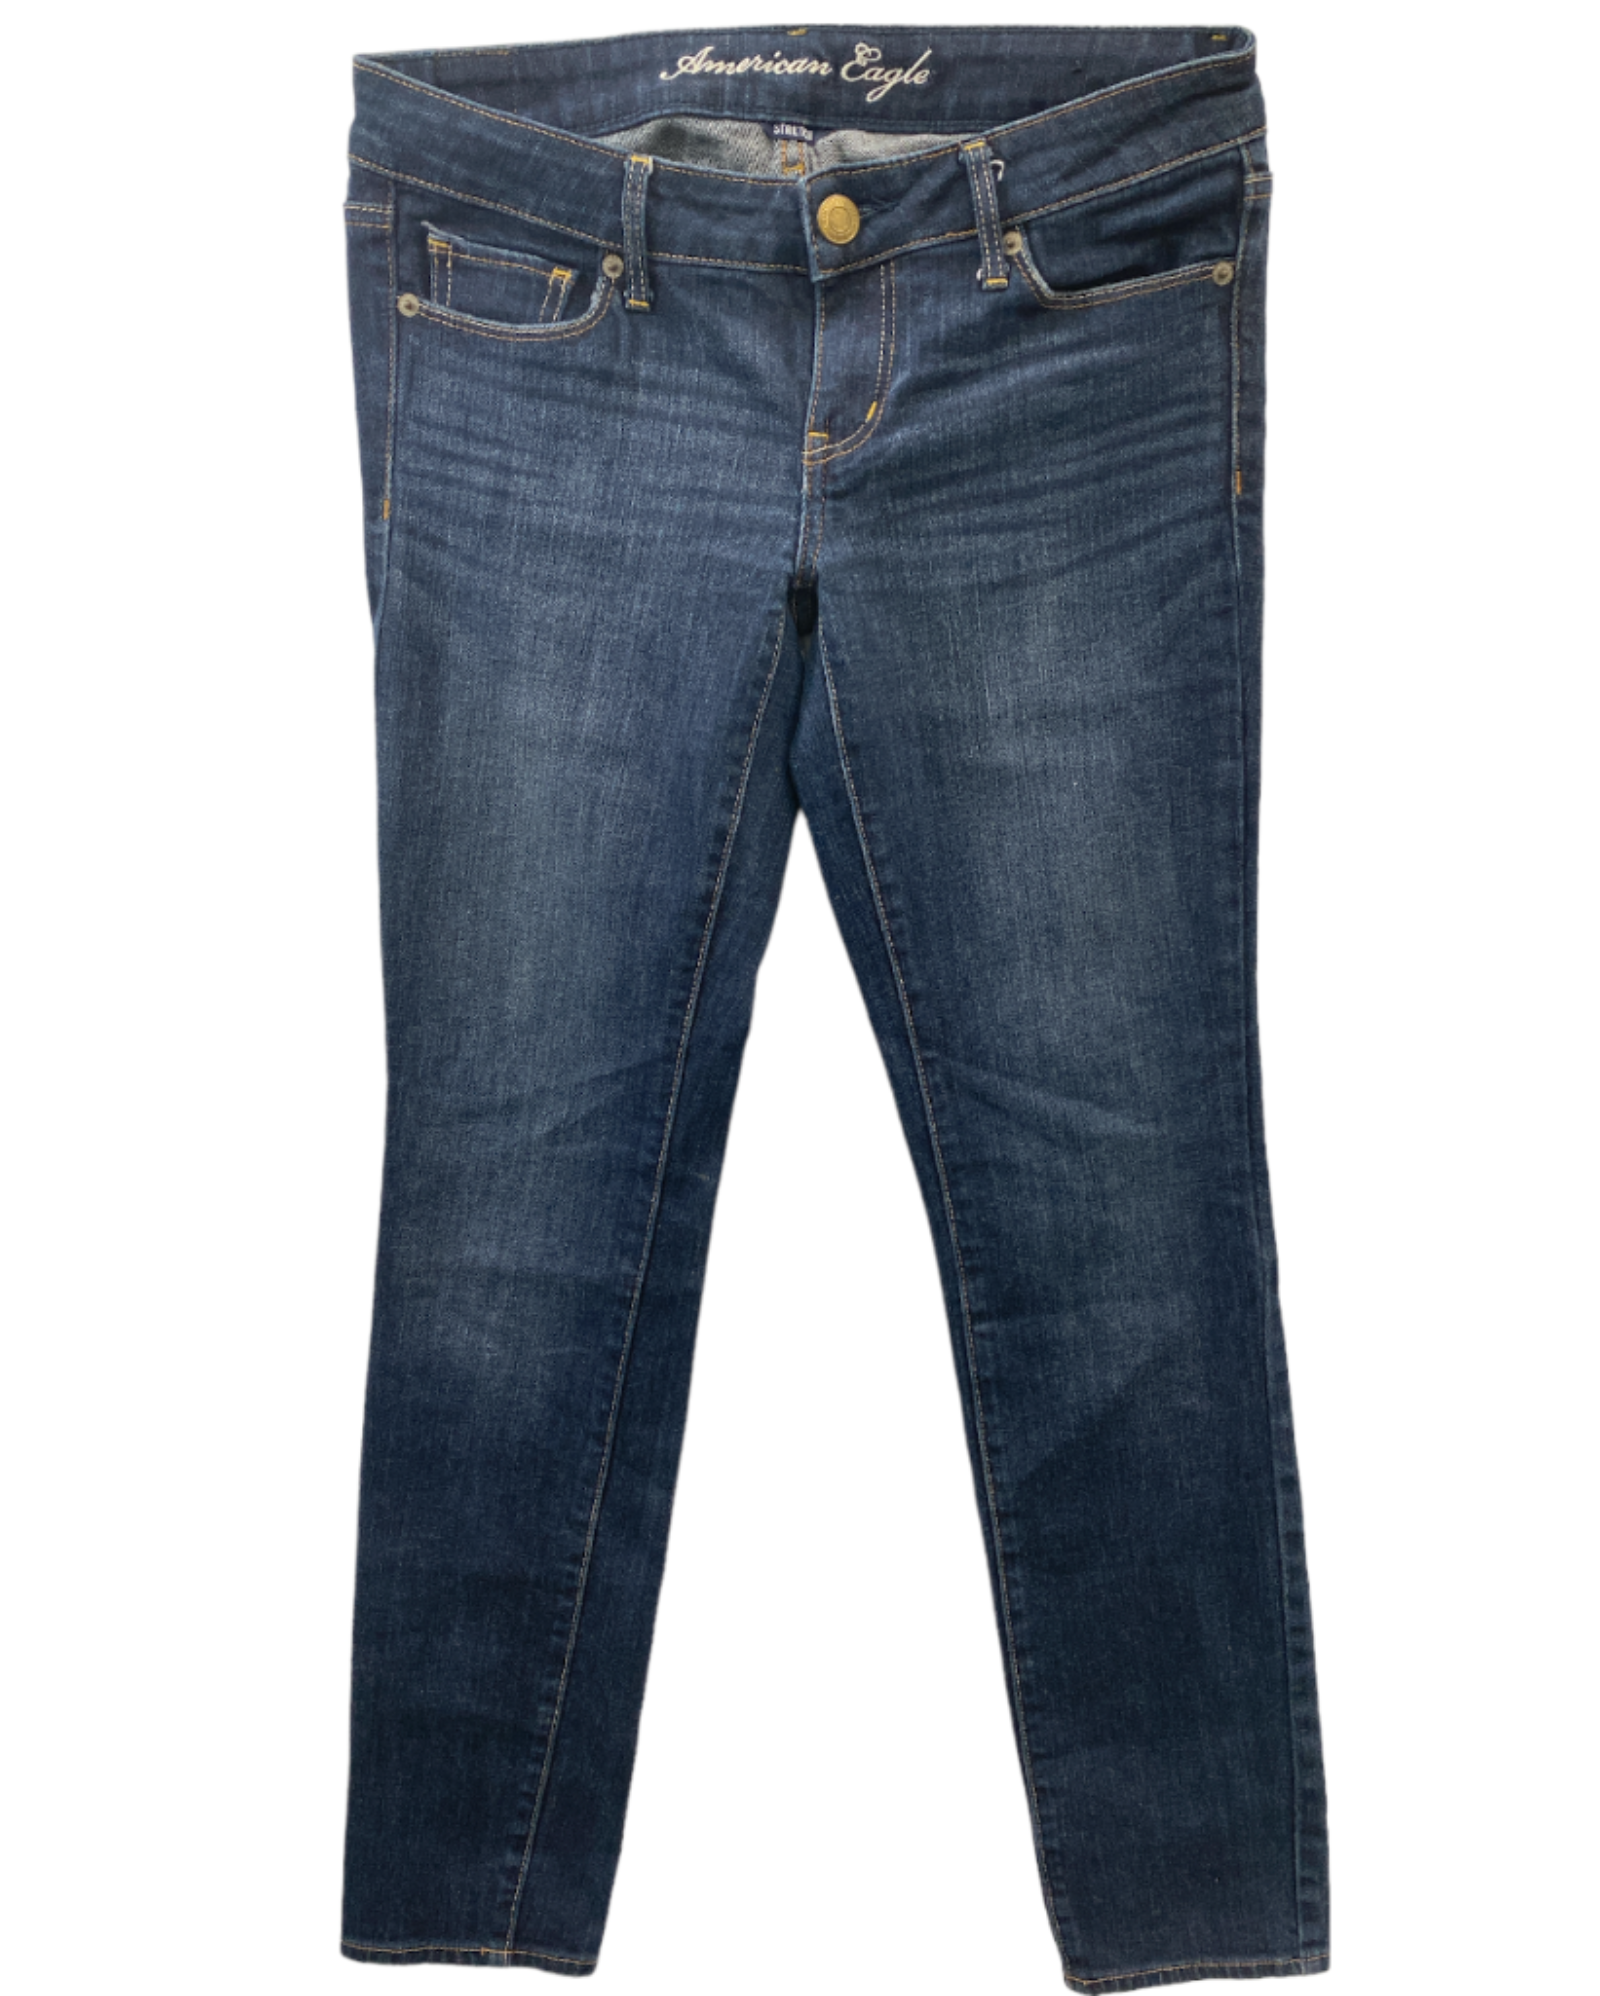 Jeans Rectos American Eagle 1